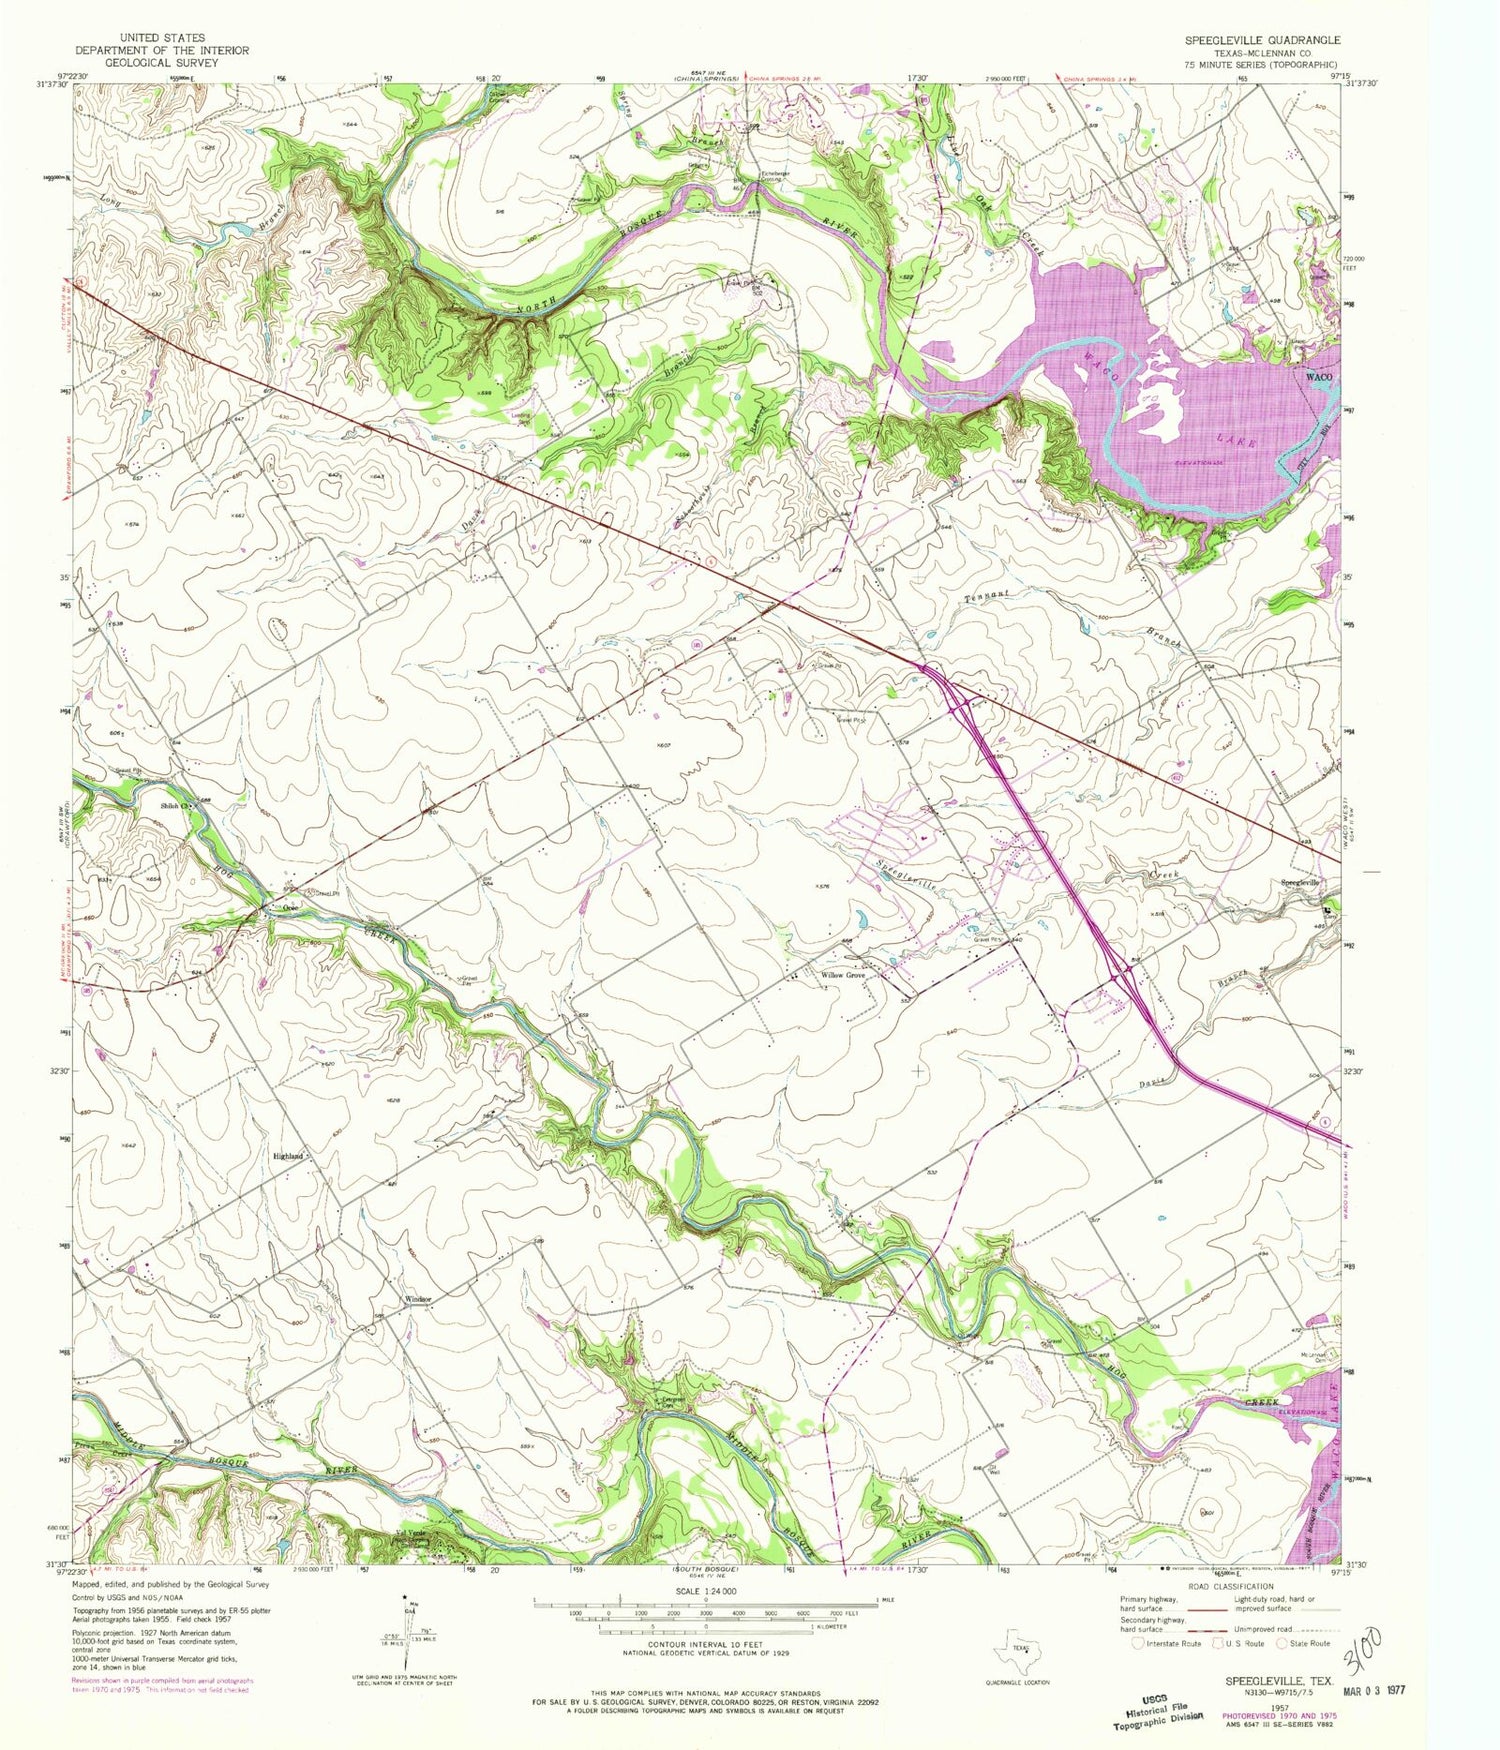 Classic USGS Speegleville Texas 7.5'x7.5' Topo Map Image